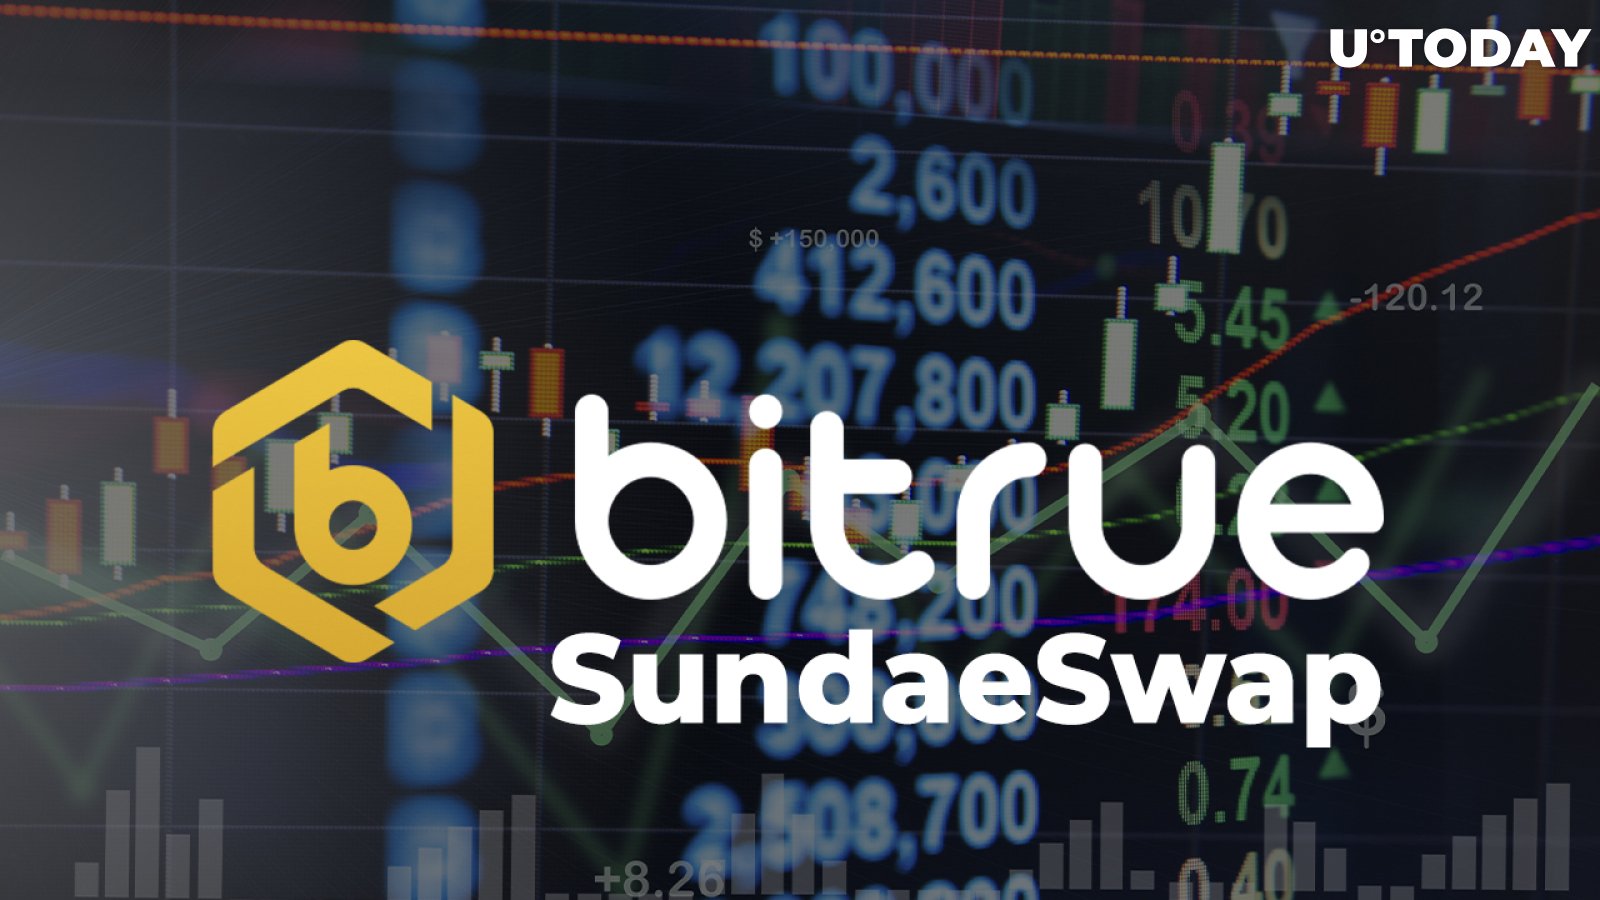 SundaeSwap (SUNDAE) Is Now Available for Trading on Bitrue Exchange